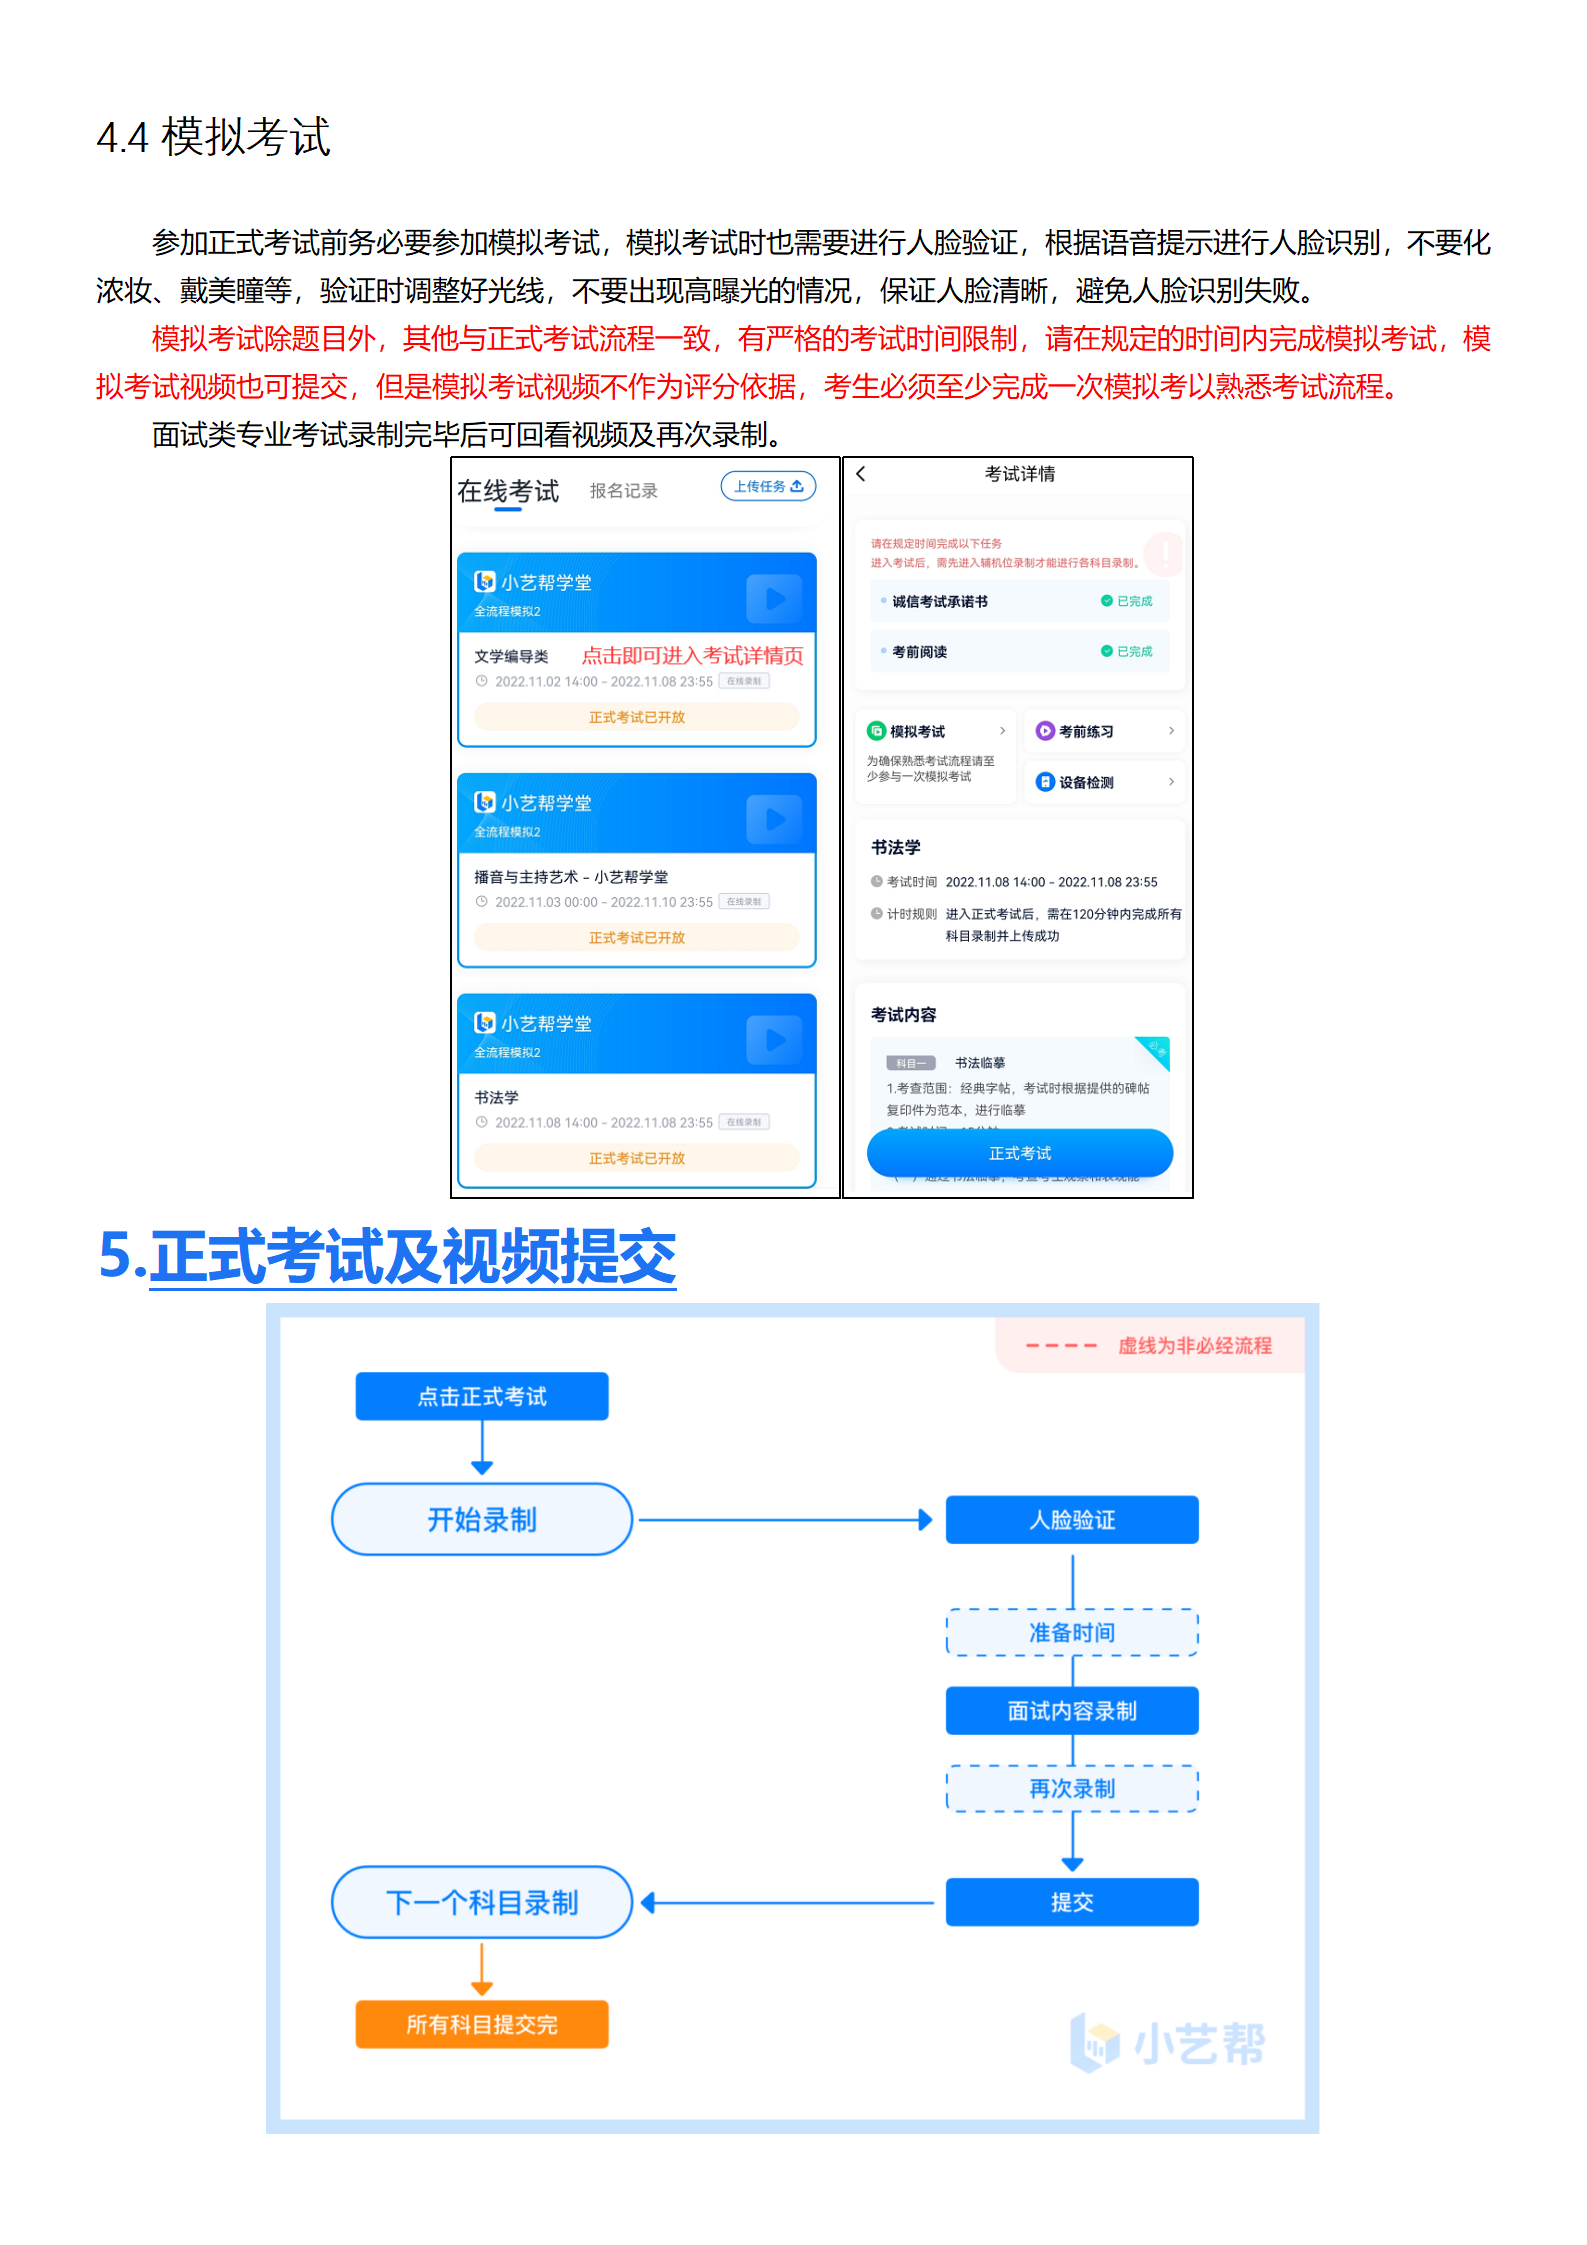 附件1：深圳大学-小艺帮4.0用户操作手册_07.png